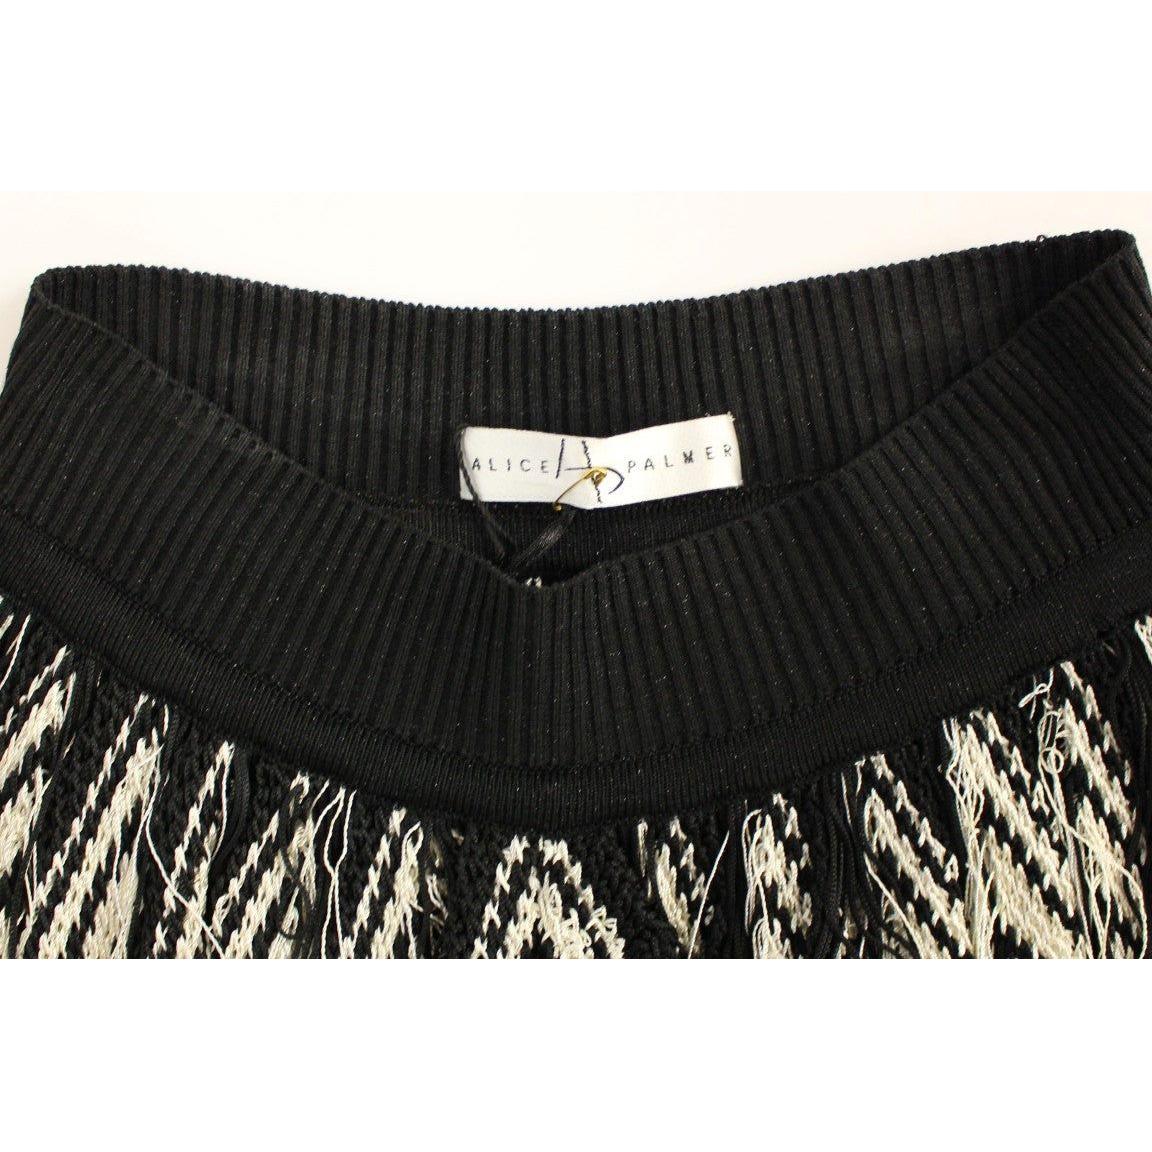 Alice Palmer Chic Black & White Knitted Skirt white-black-knitted-assymetrical-skirt 219090-white-black-knitted-assymetrical-skirt-4.jpg